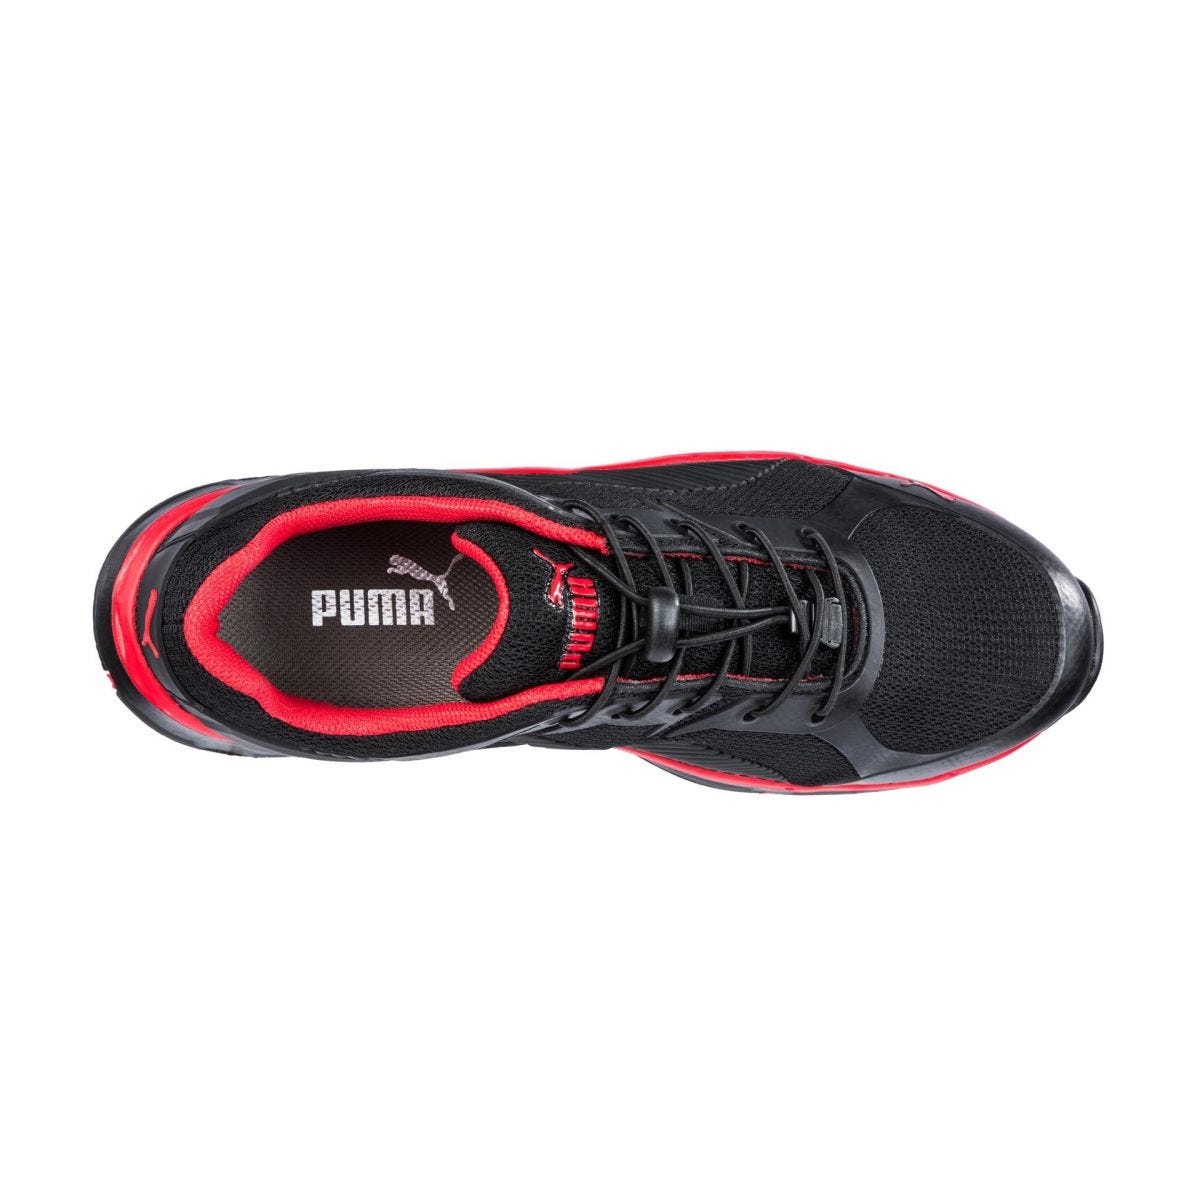 Chaussures de sécurité Fuse Motion 2.0 low S1P ESD HRO SRC rouge - Puma - Taille 40 3